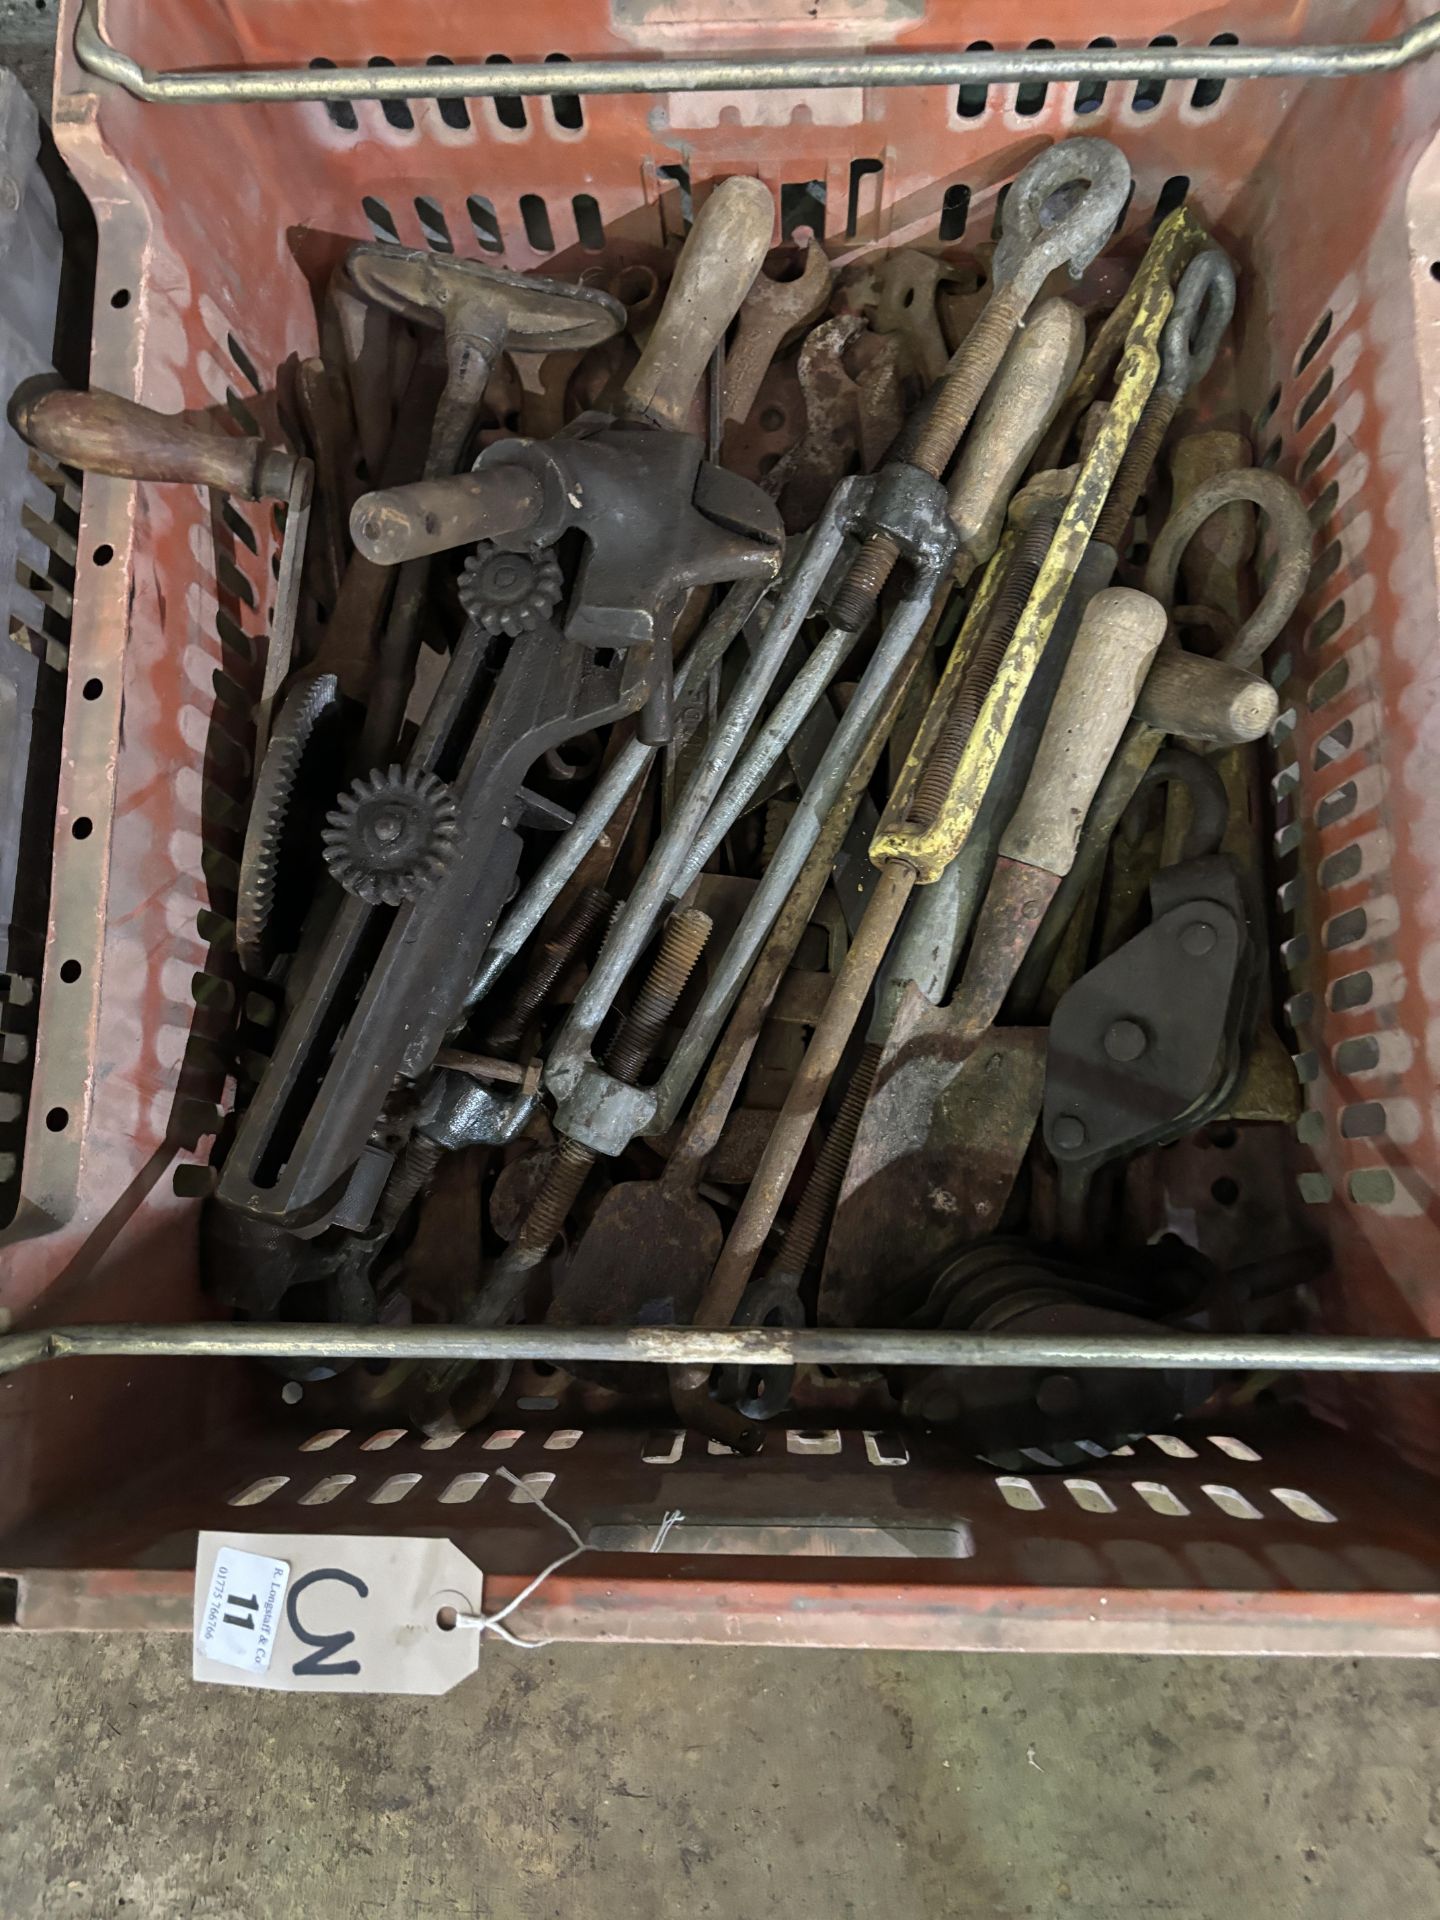 Qty of tools